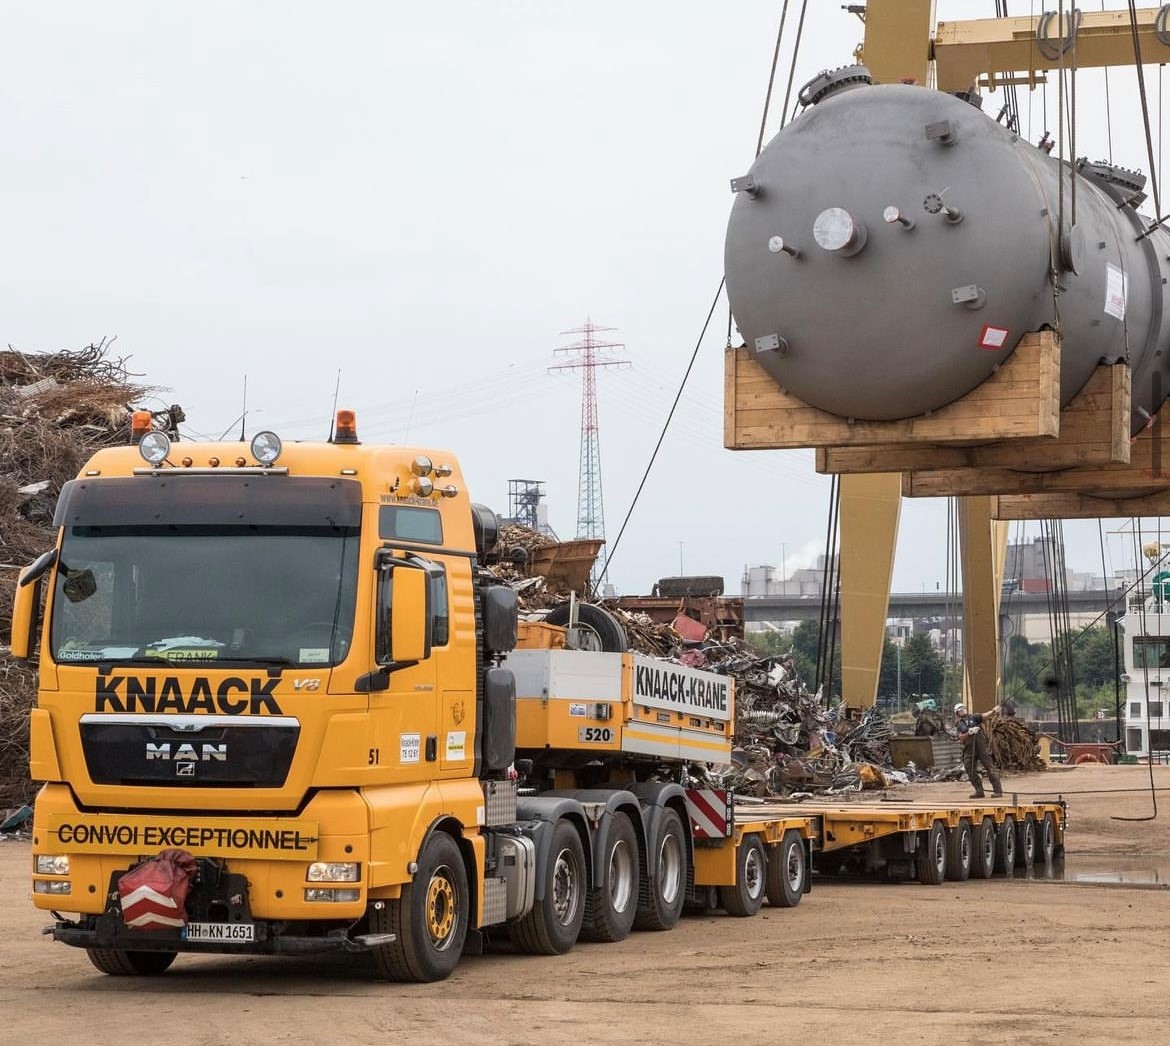 Transport von Maschinenteilen von Knaack-Krane